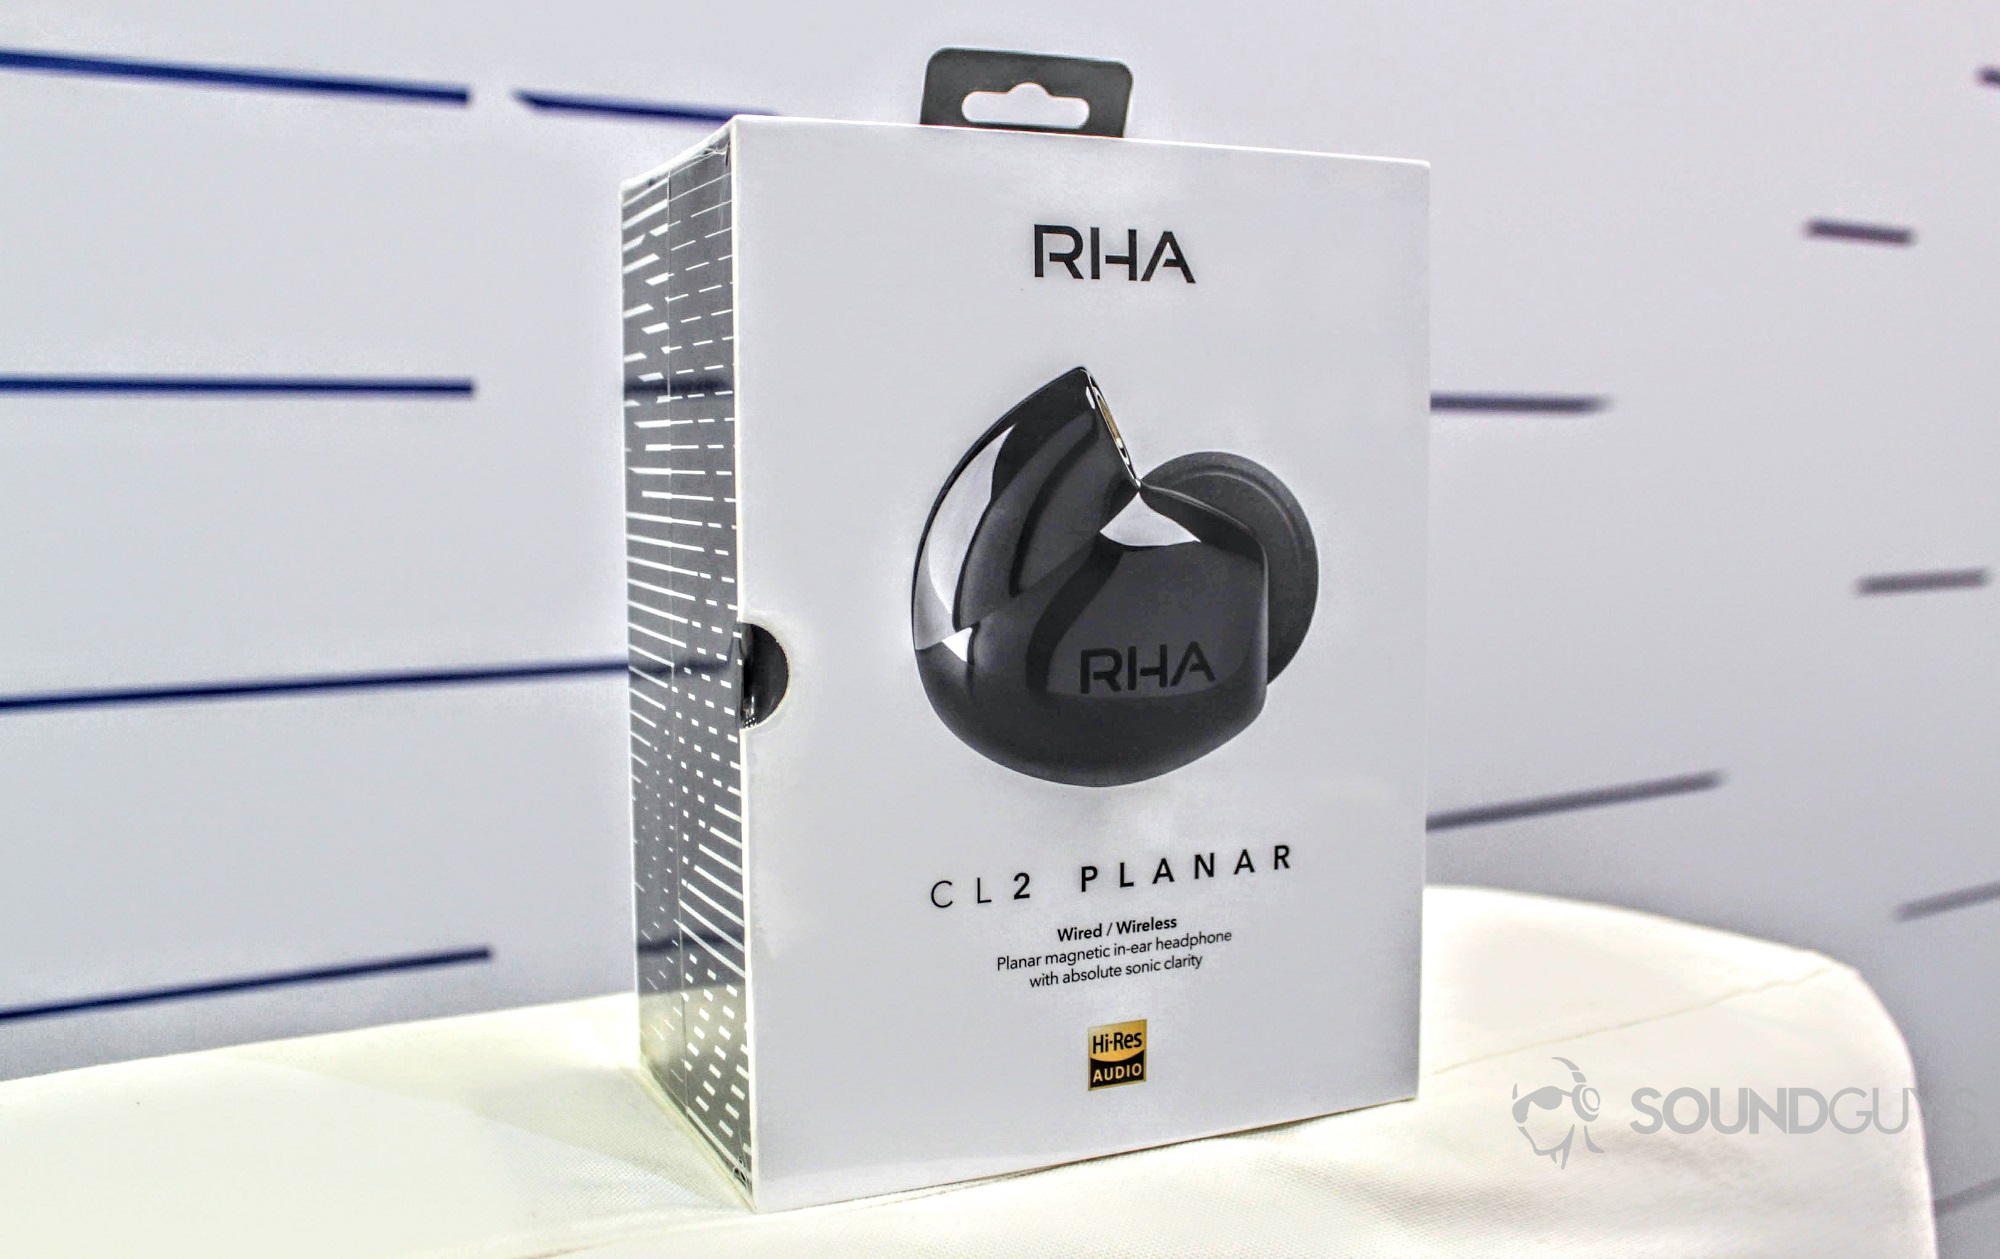 The RHA CL2 Planar retail box.